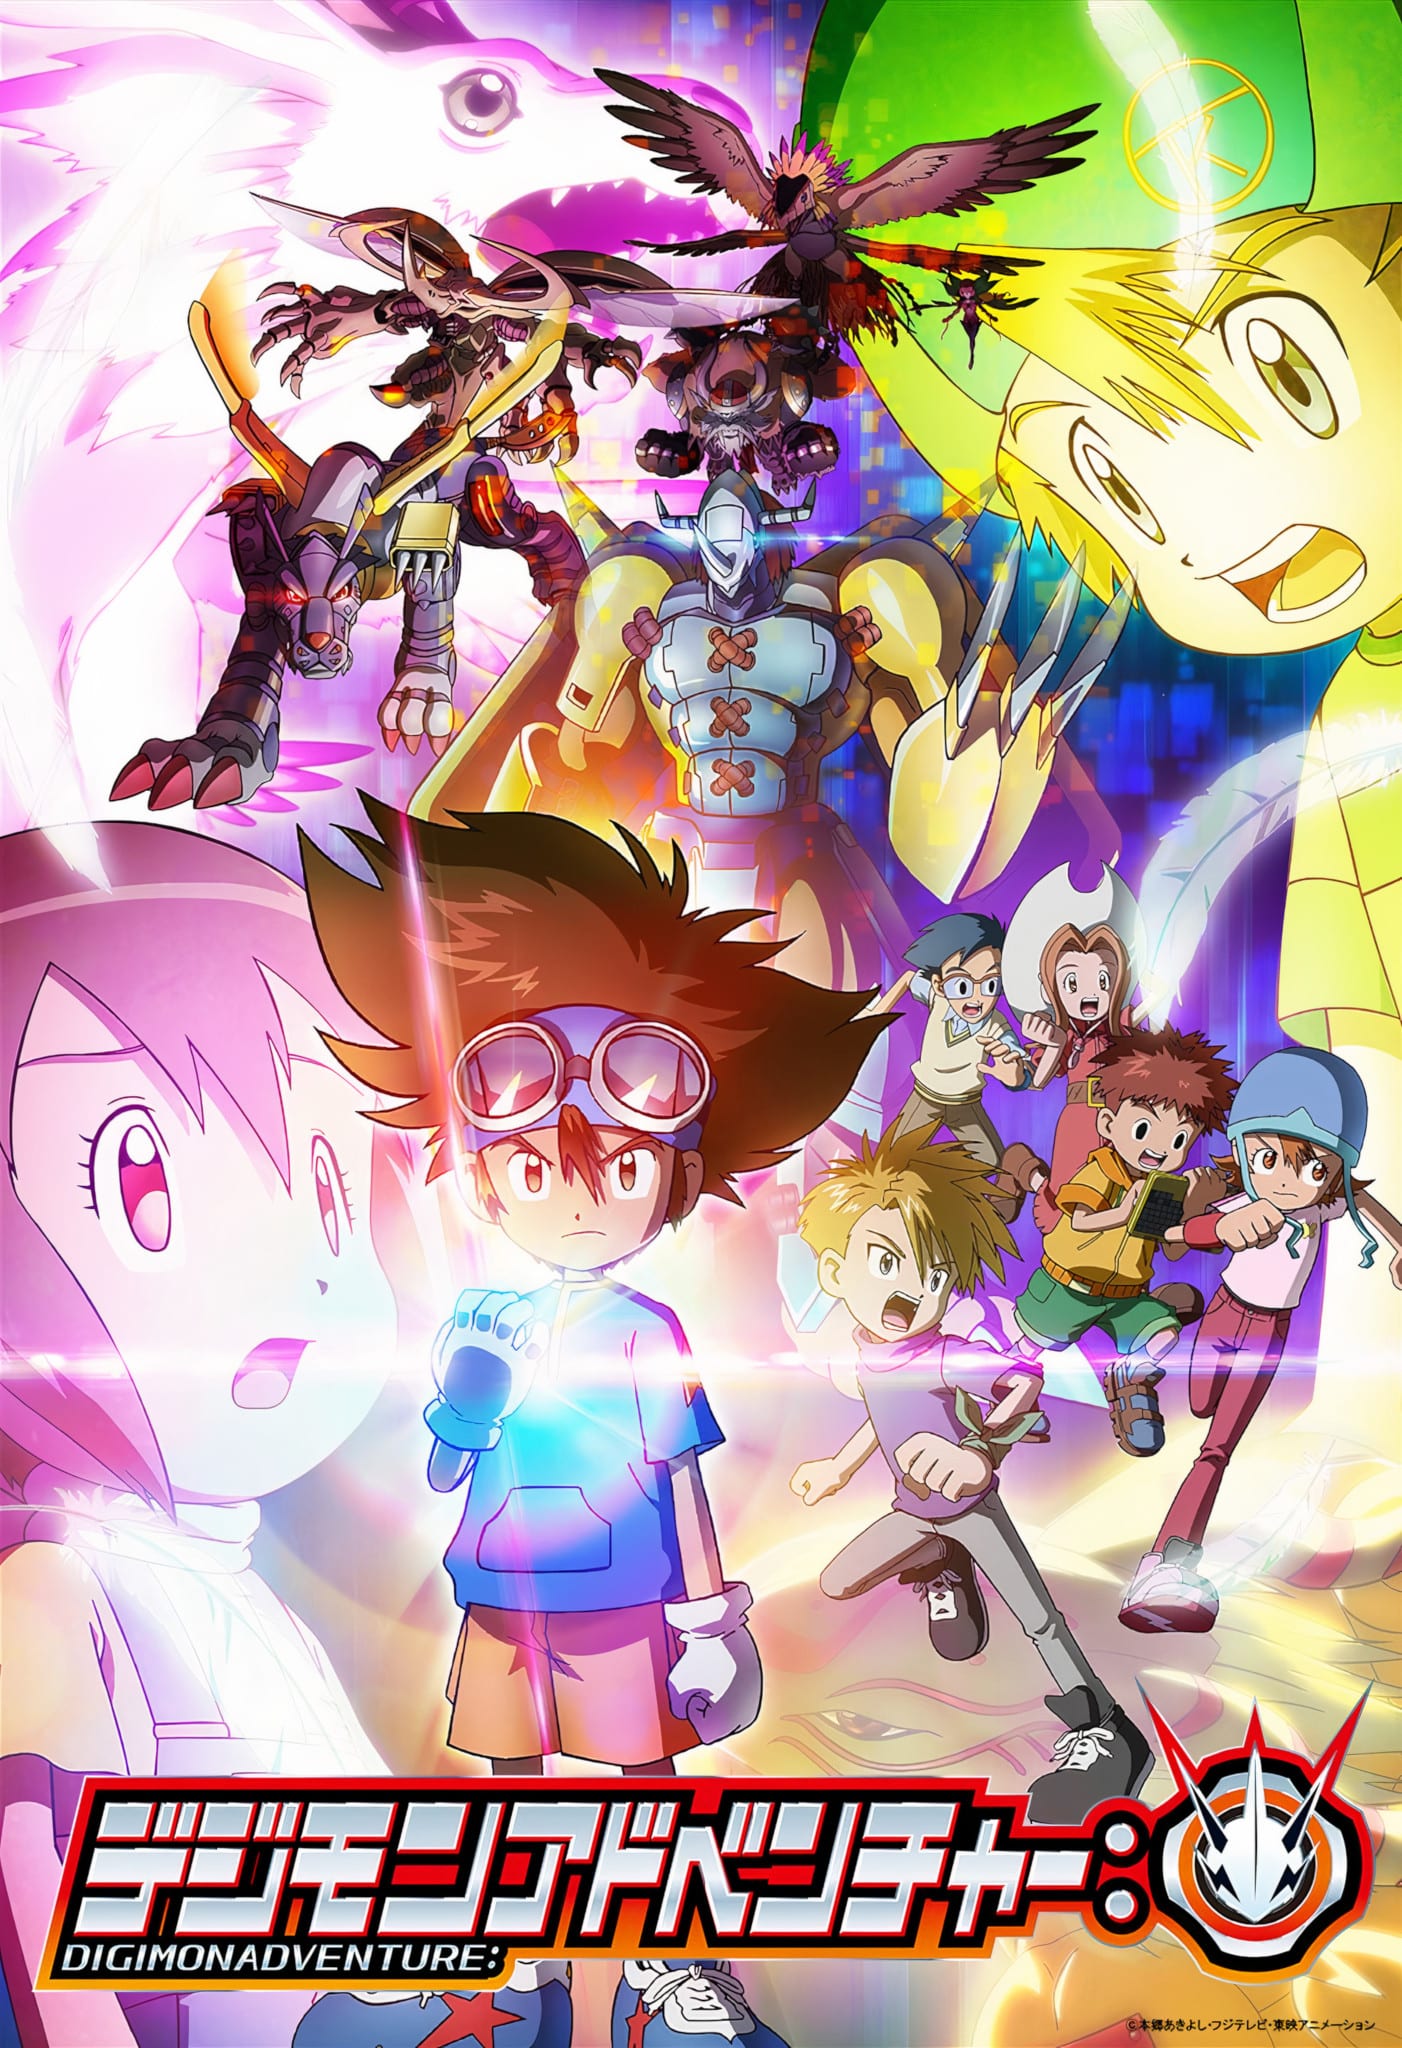 Nouveau teaser pour anime Digimon Adventure 2020